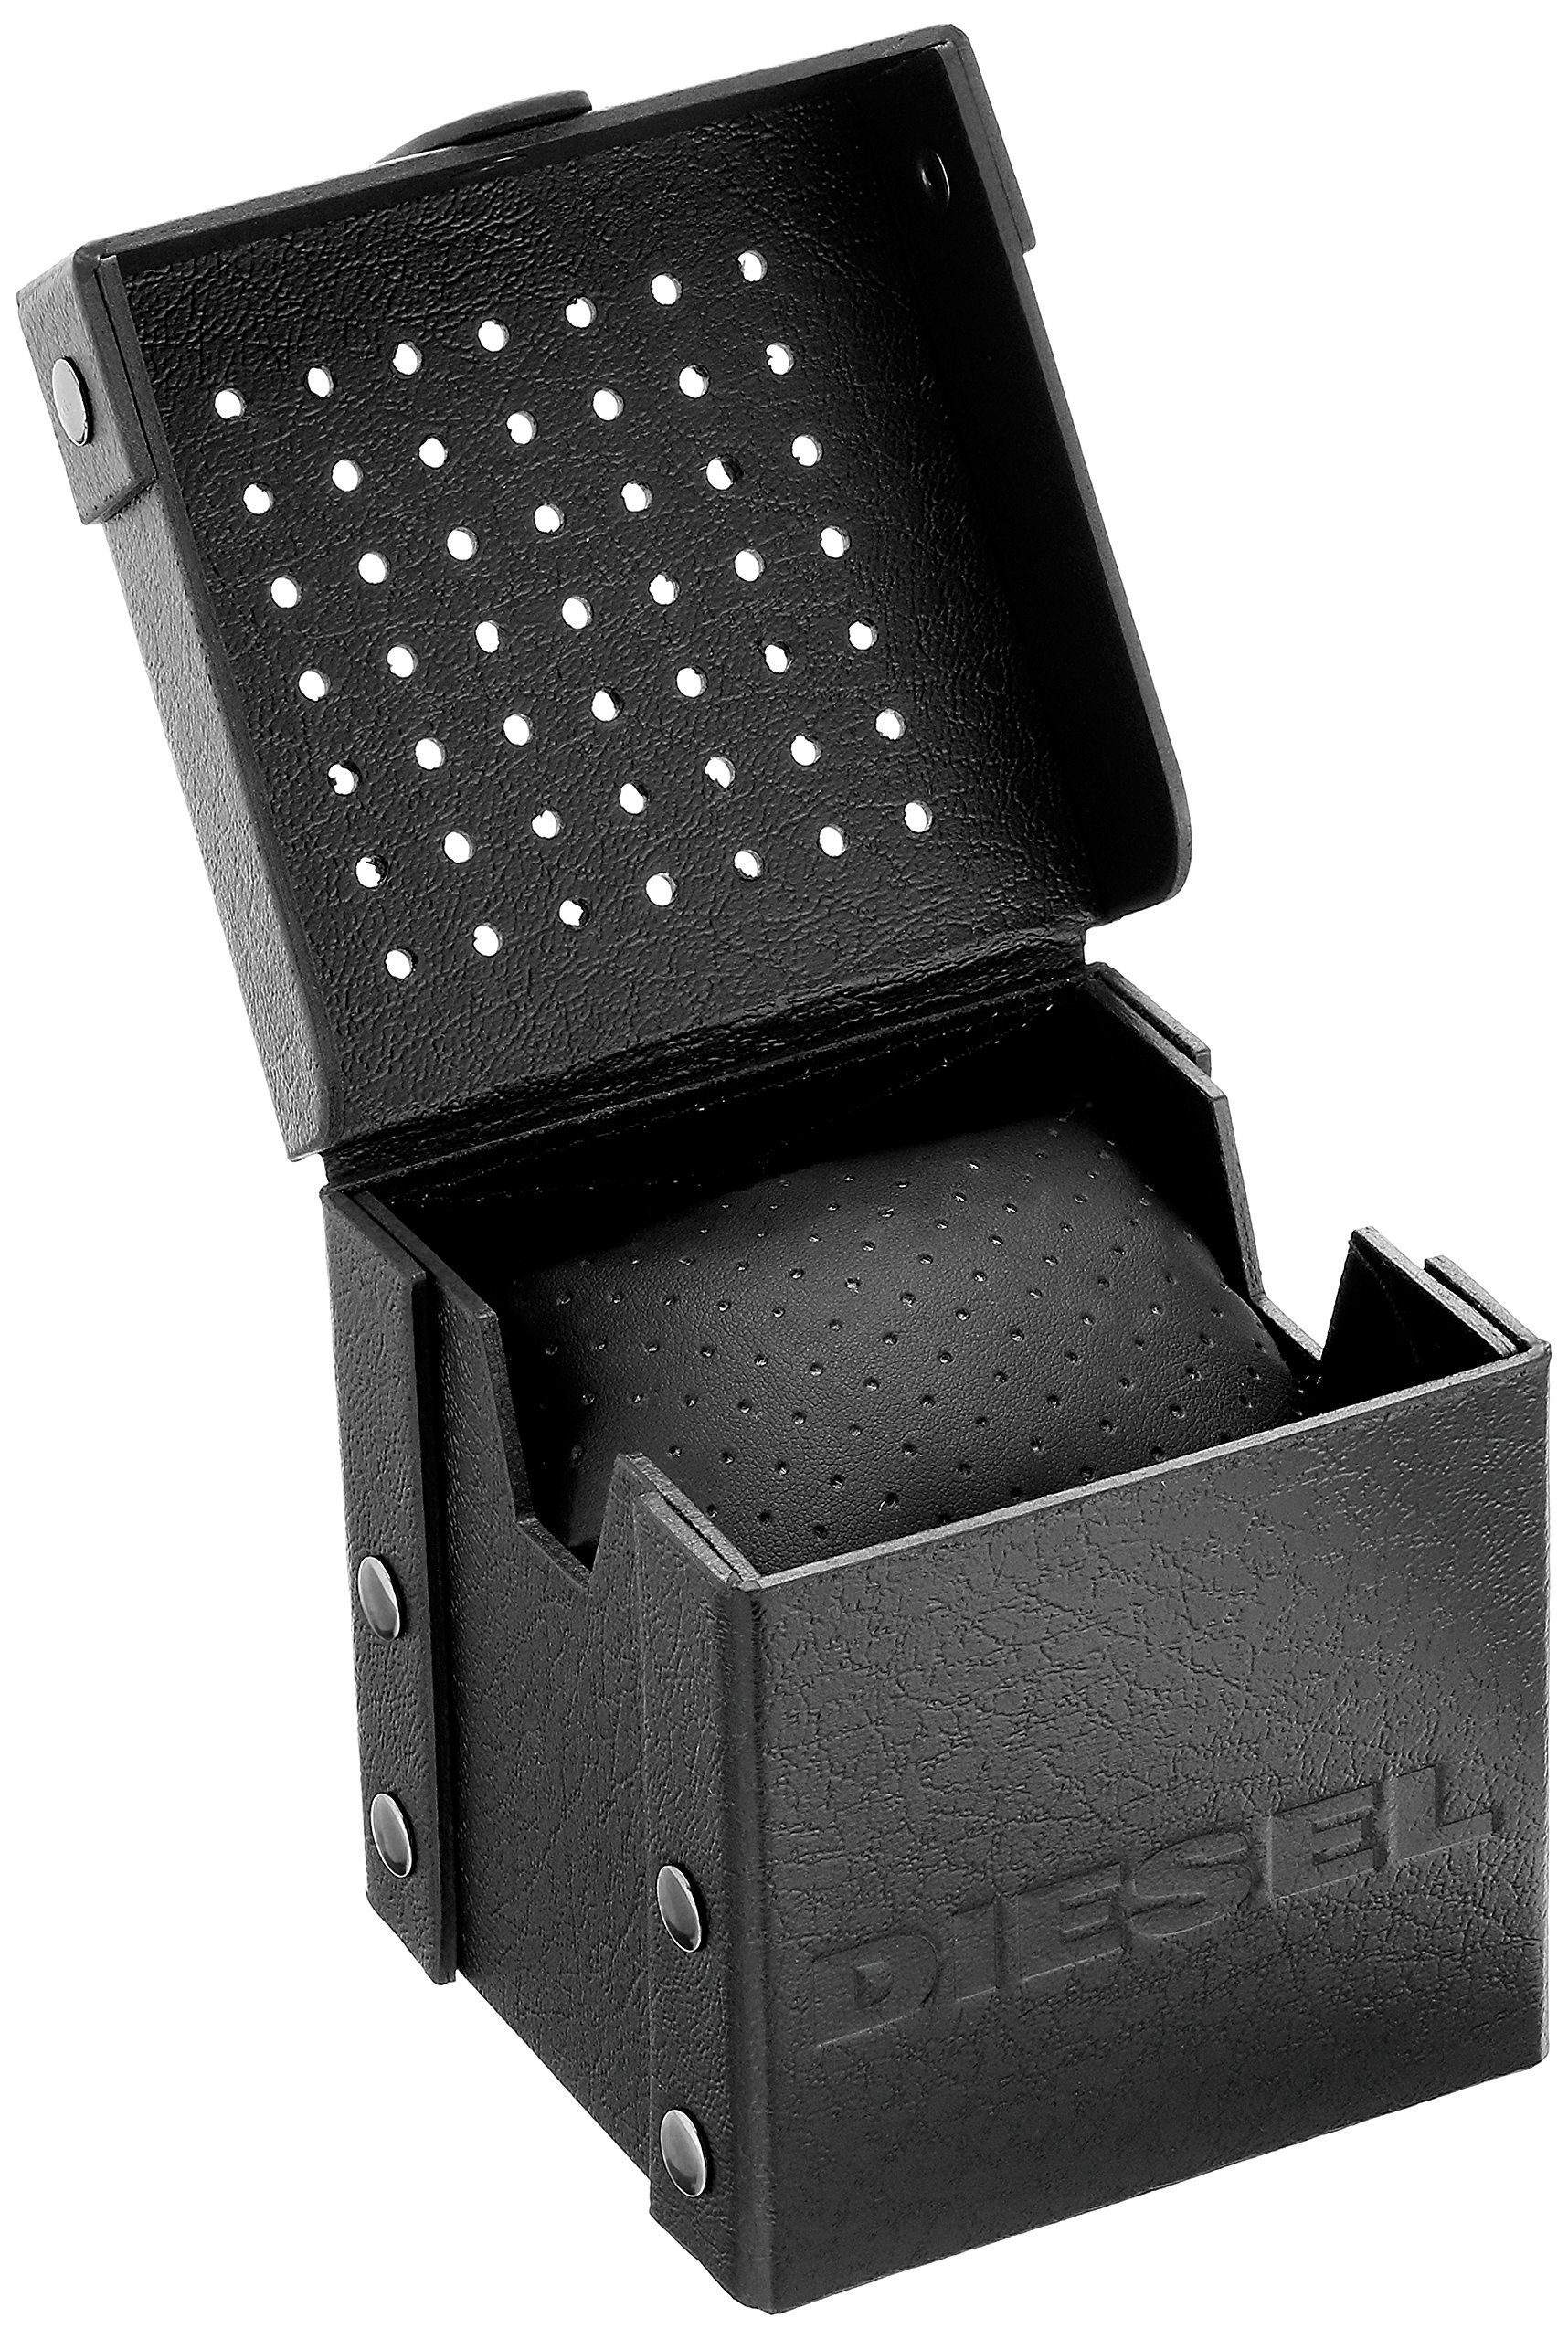 Diesel Men's DZ4479 Mega Chief Analog Display Quartz Black Watch